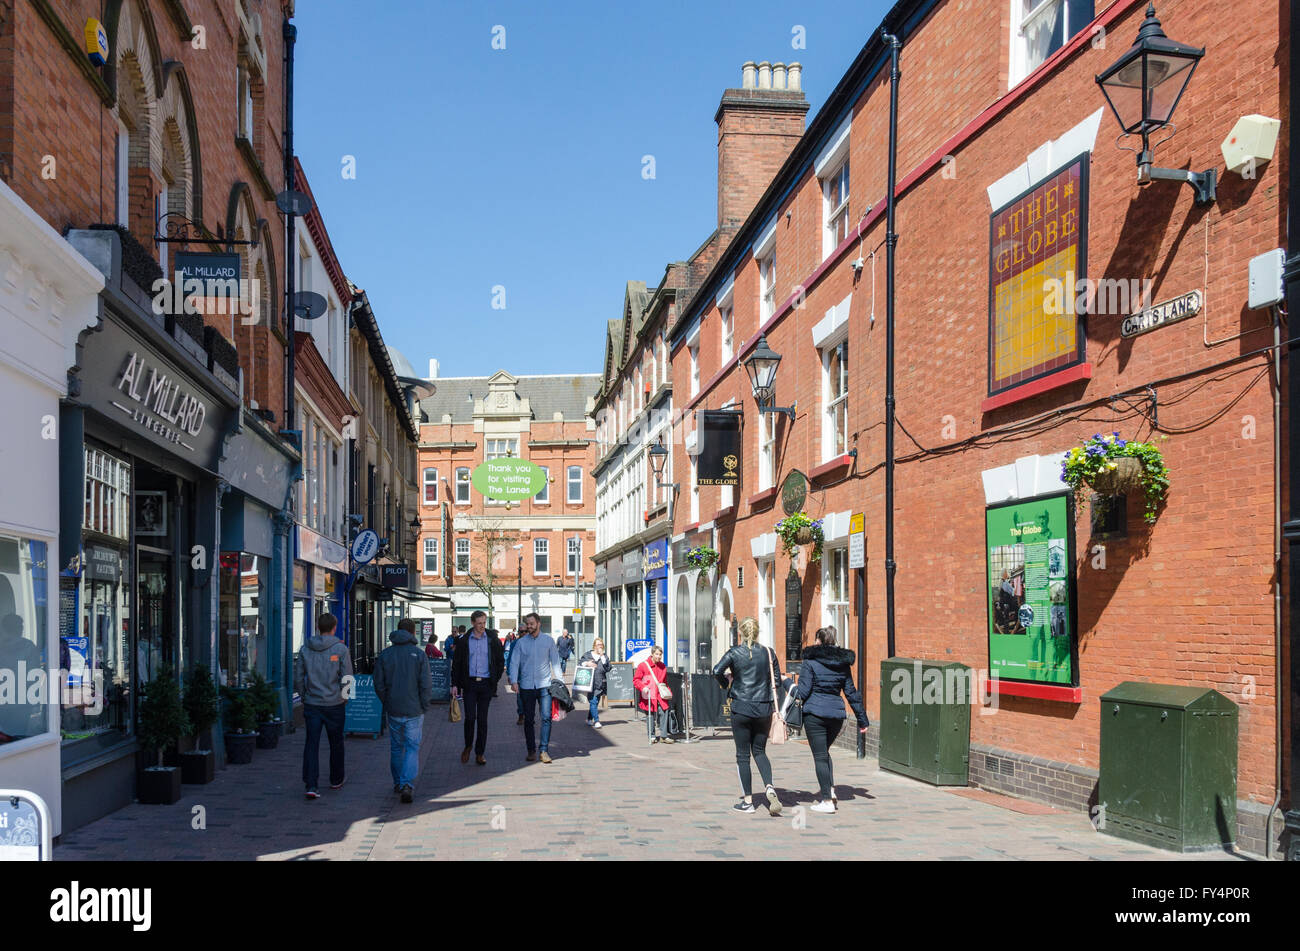 Tiendas y cafés en carretas Lane en la histórica zona de callejuelas del centro de la ciudad de Leicester Foto de stock